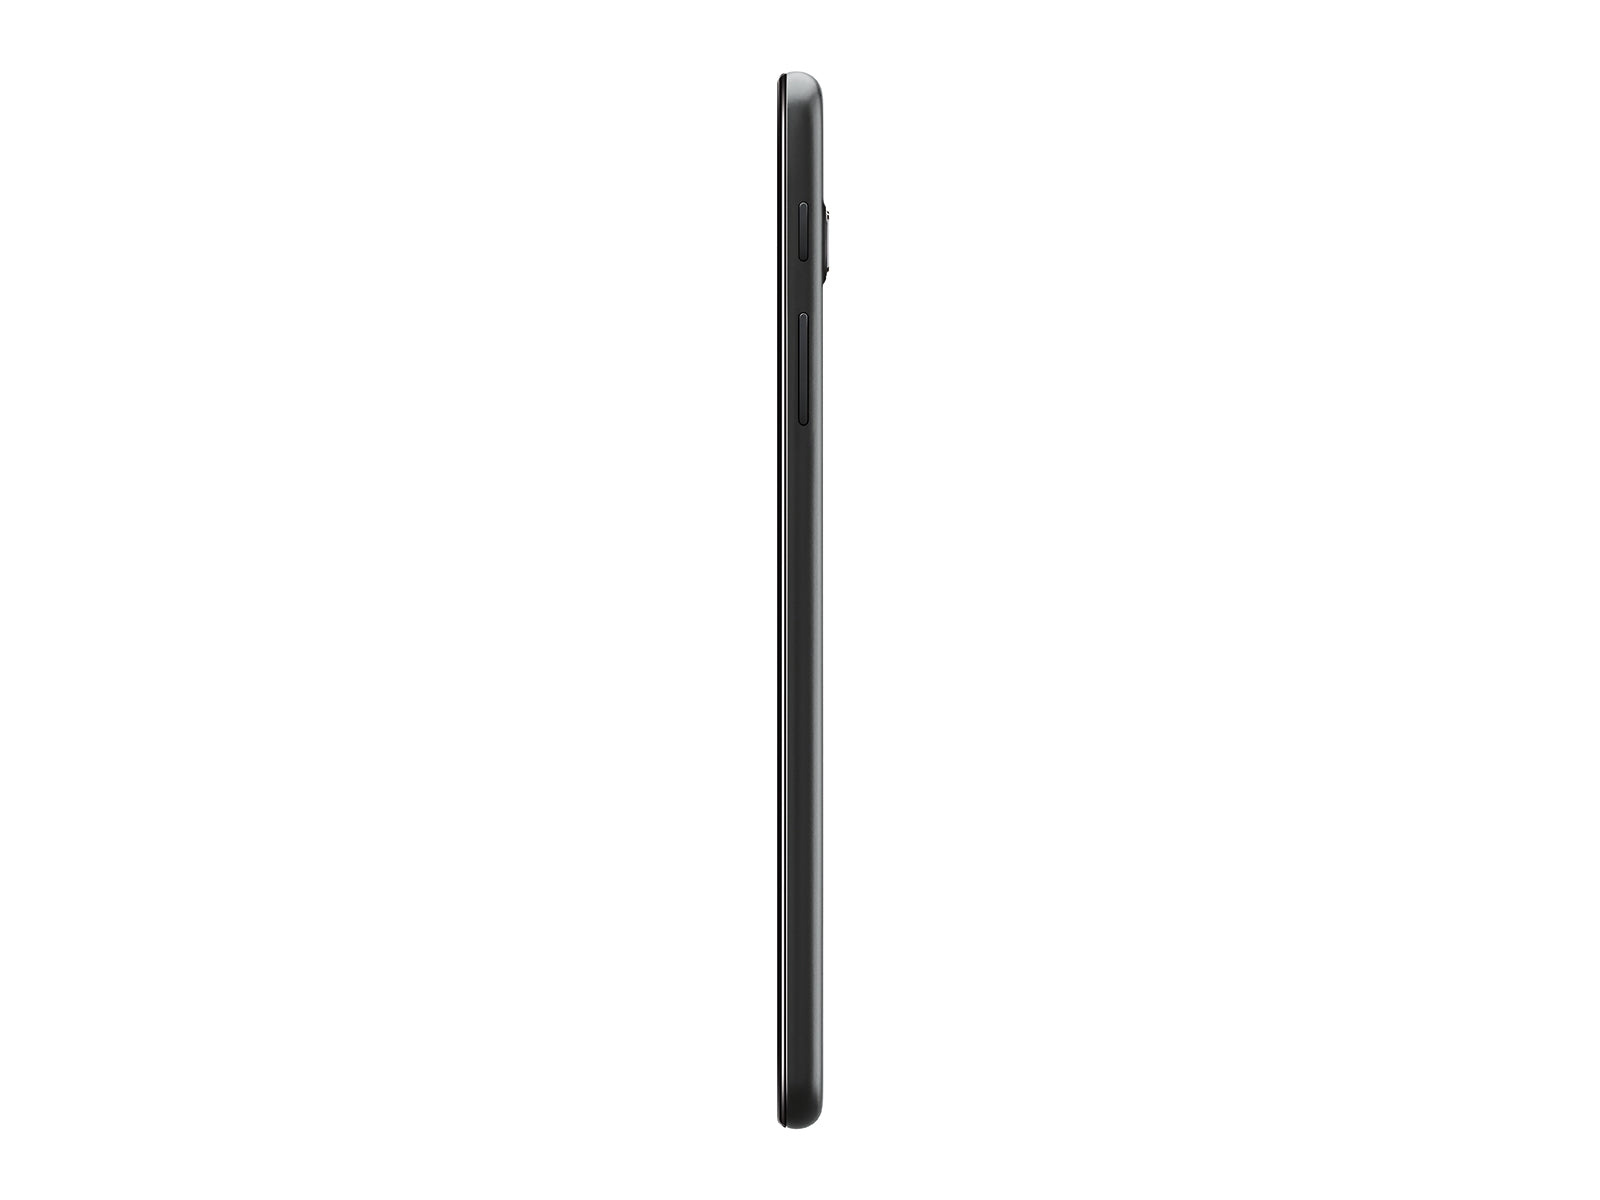 Samsung SM-T387AZKAATT-RBC 8.0" Galaxy Tab A 32GB Wifi 4G LTE Android Tablet Black - Certified Refurbished